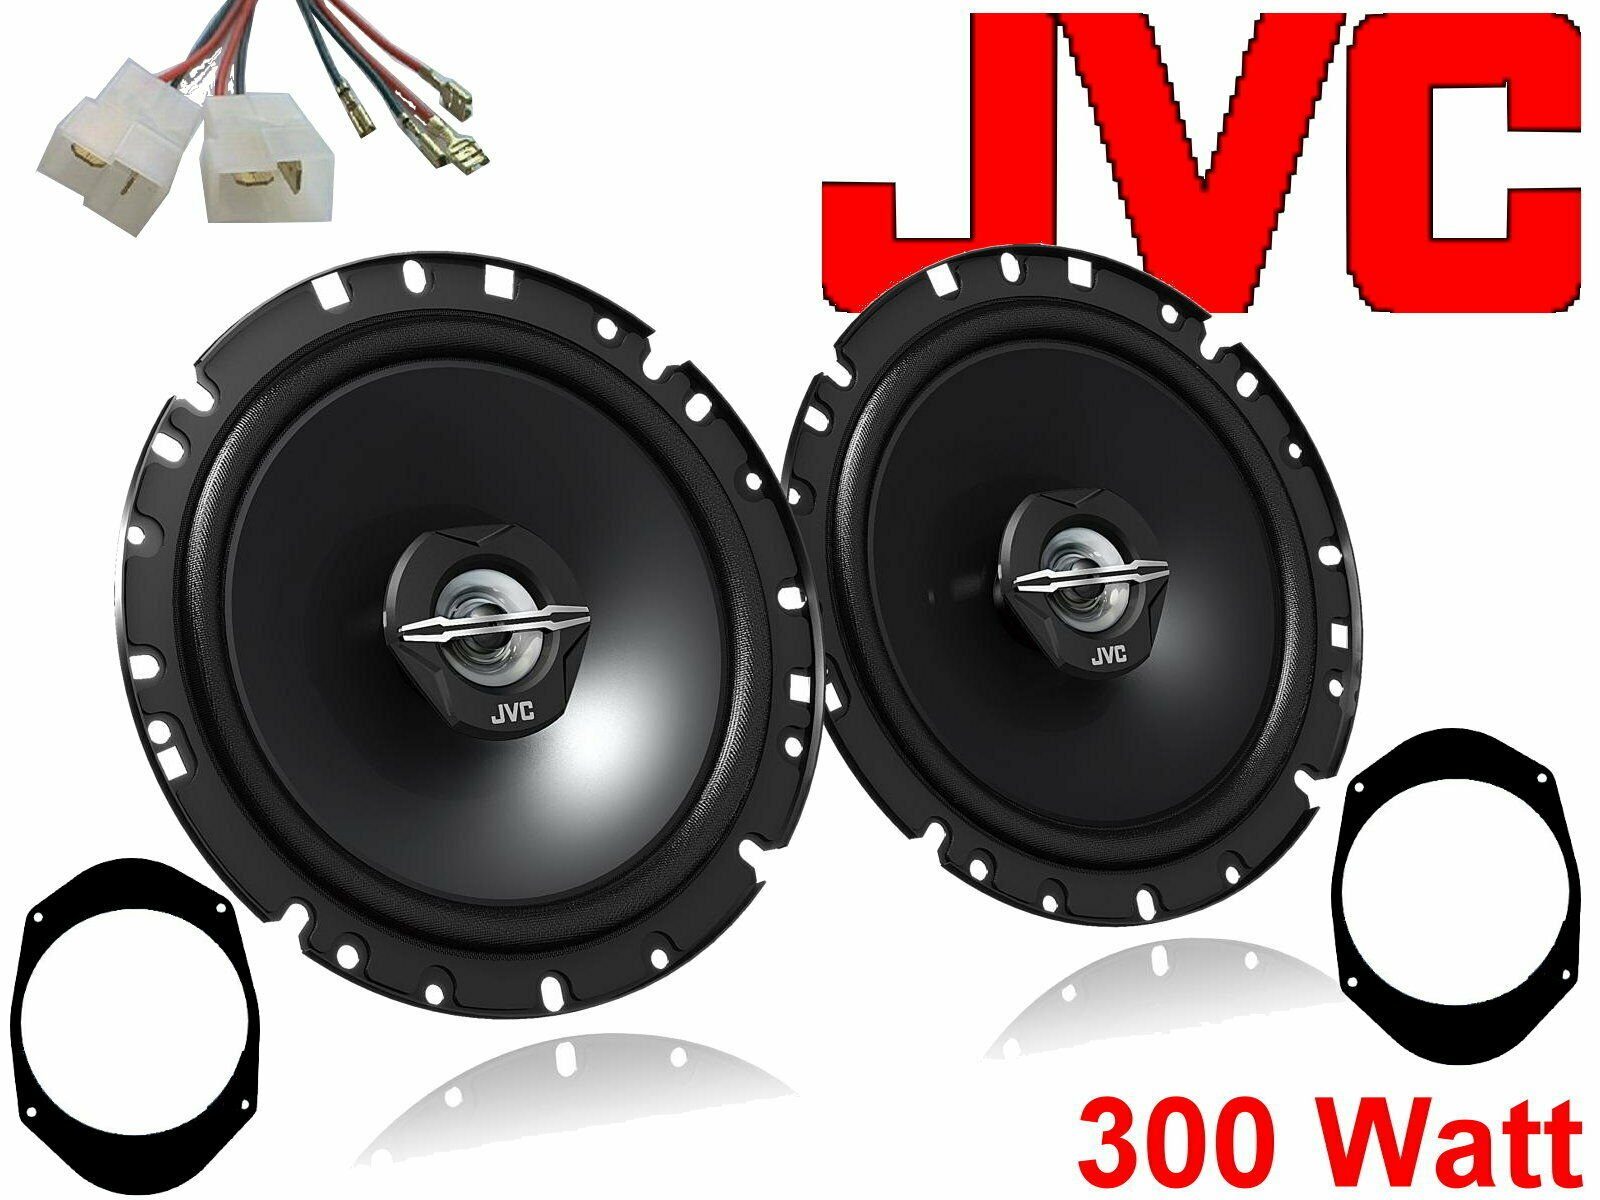 DSX JVC 300 W passend für Ford Ka 96 - 08 Lautspreche Auto-Lautsprecher (30 W)